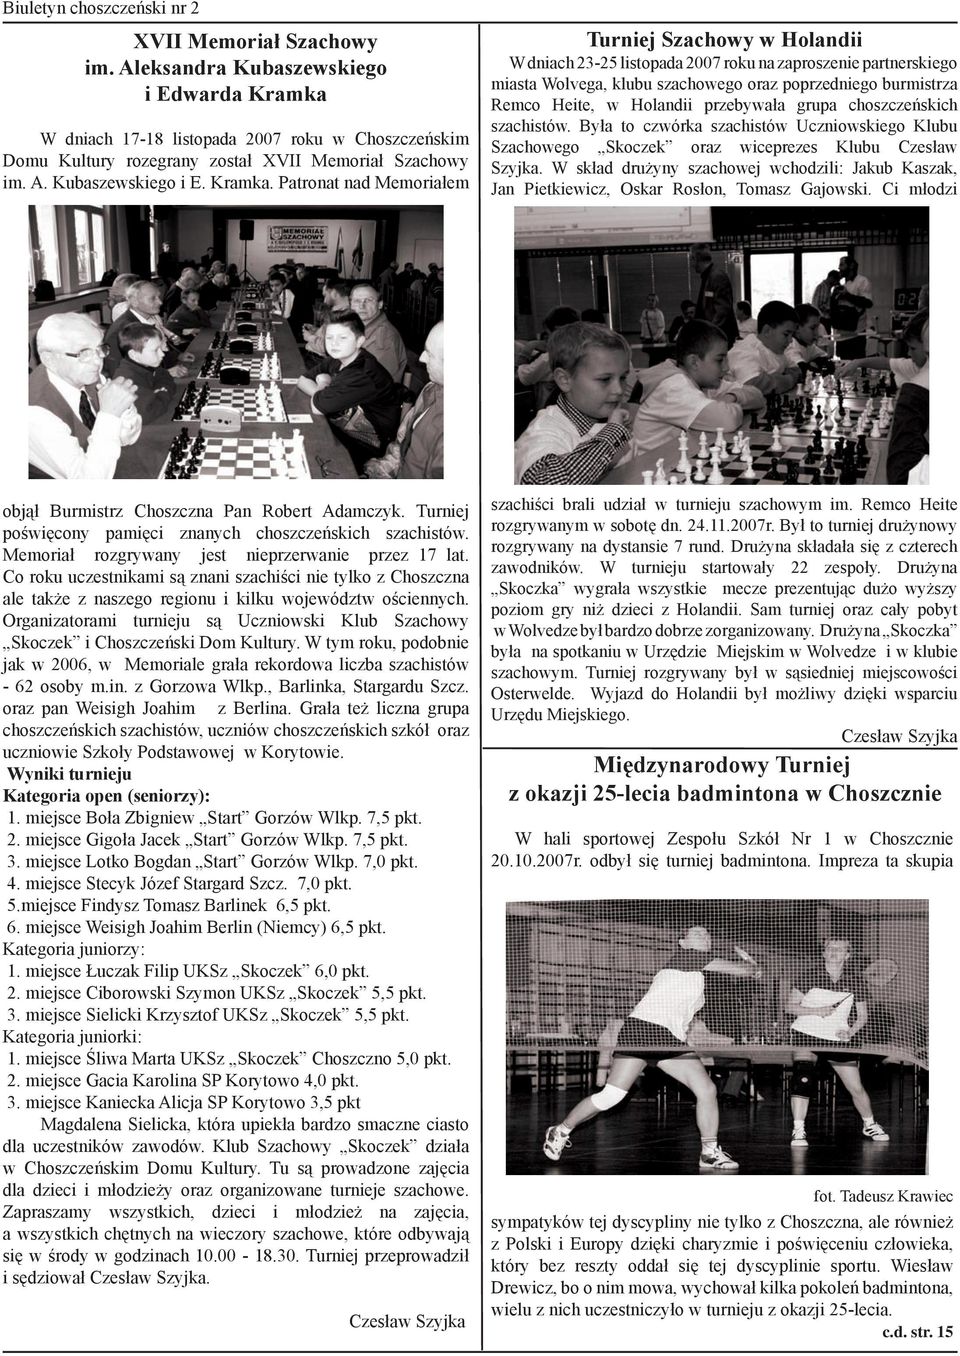 W dniach 17-18 listopada 2007 roku w Choszczeńskim Domu Kultury rozegrany został XVII Memoriał Szachowy im. A. Kubaszewskiego i E. Kramka.